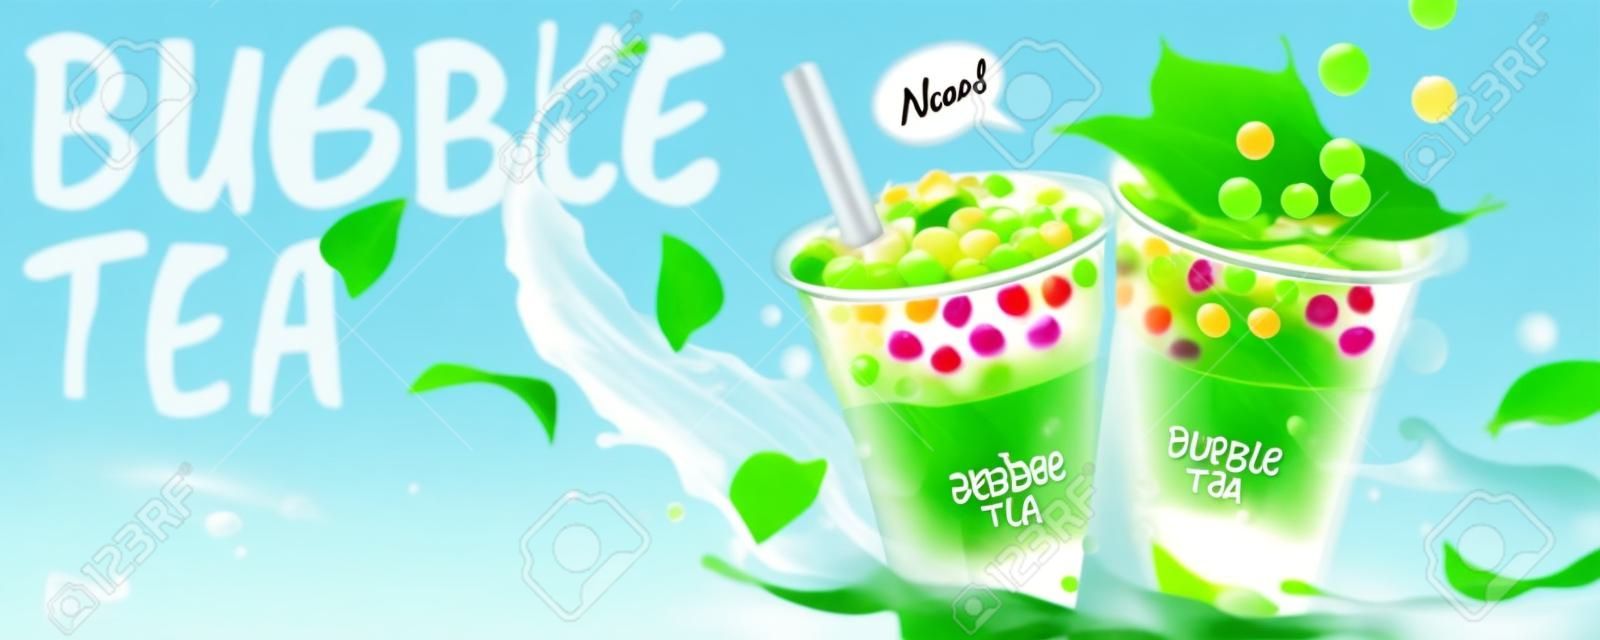 Anuncios de banner de té de burbujas con salpicaduras de leche y hojas verdes, ilustración 3d